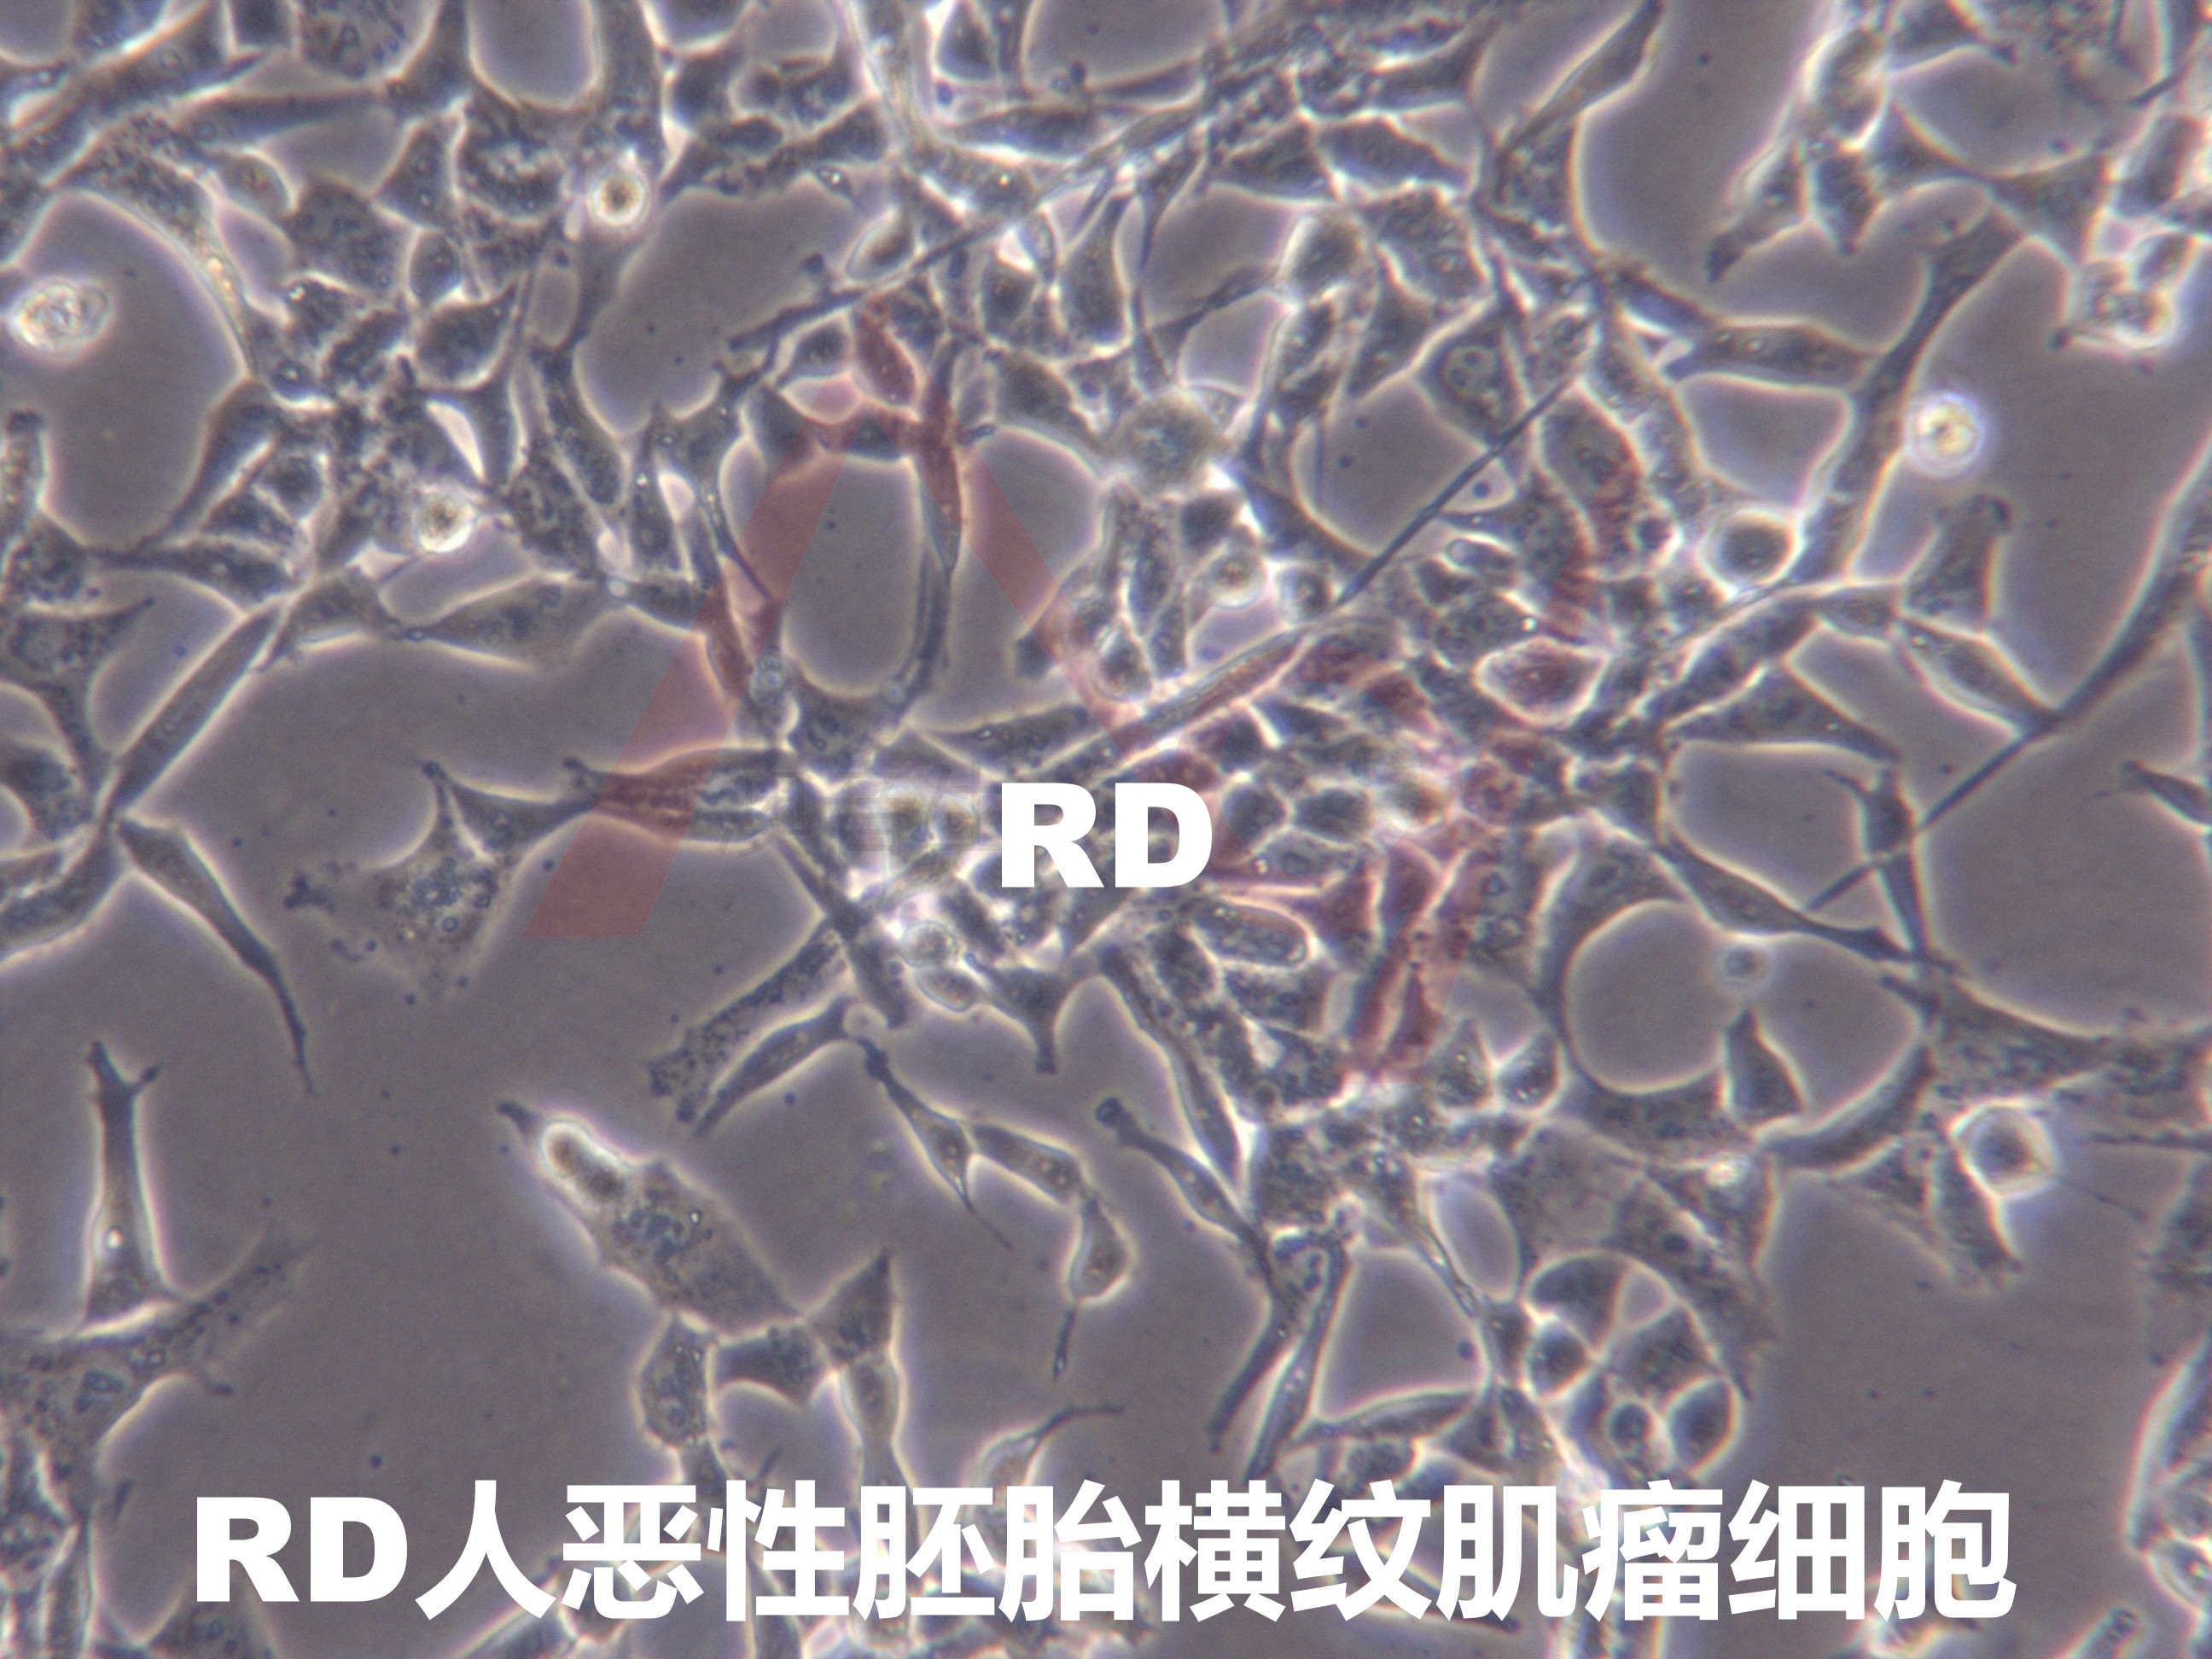 RD[RD;rd;R D; RD-2; RD 2]人恶性胚胎横纹肌瘤细胞